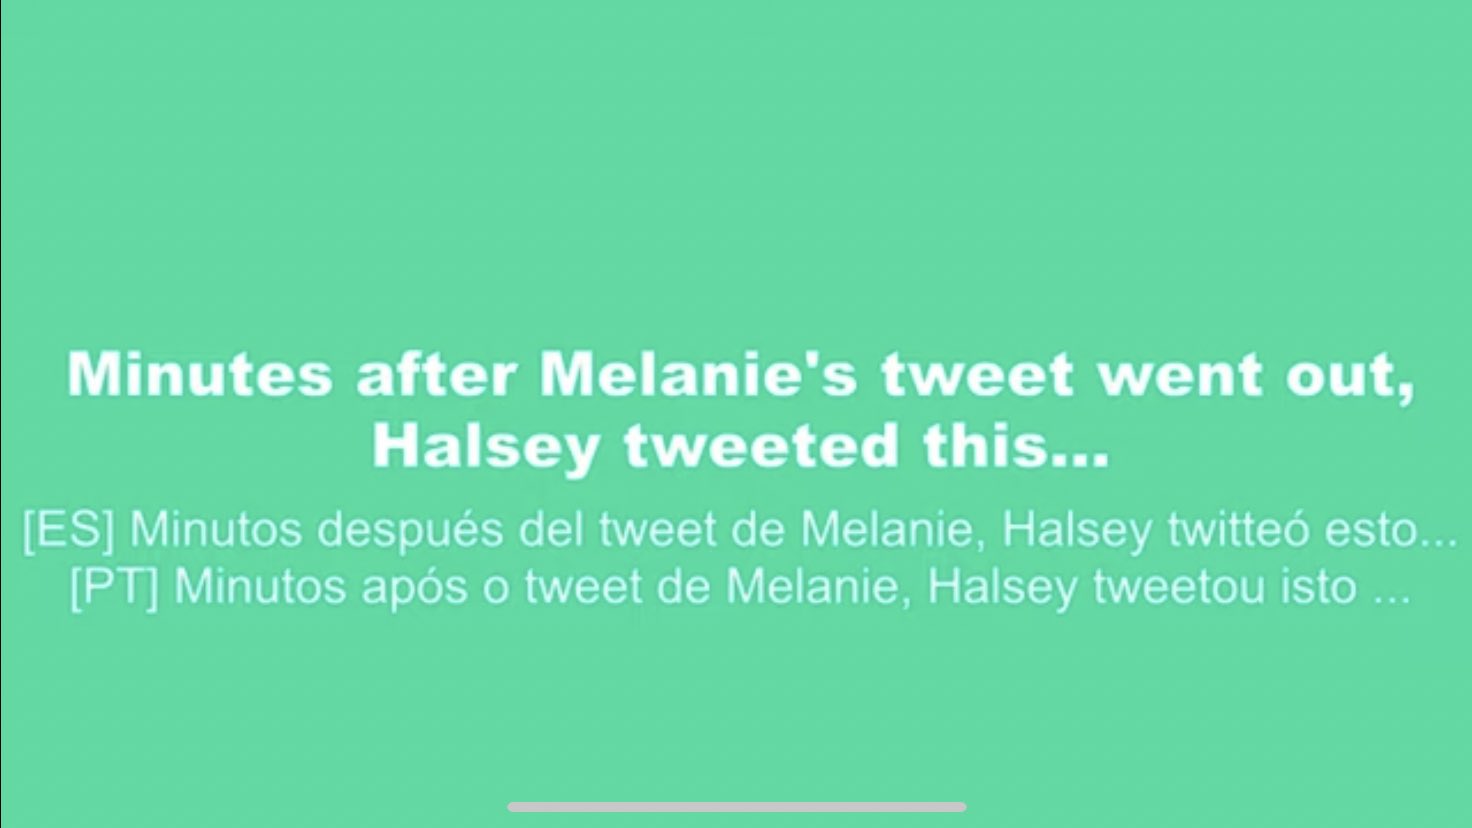 matthew on X: @dojasslipstick …but then melanie praised halsey in